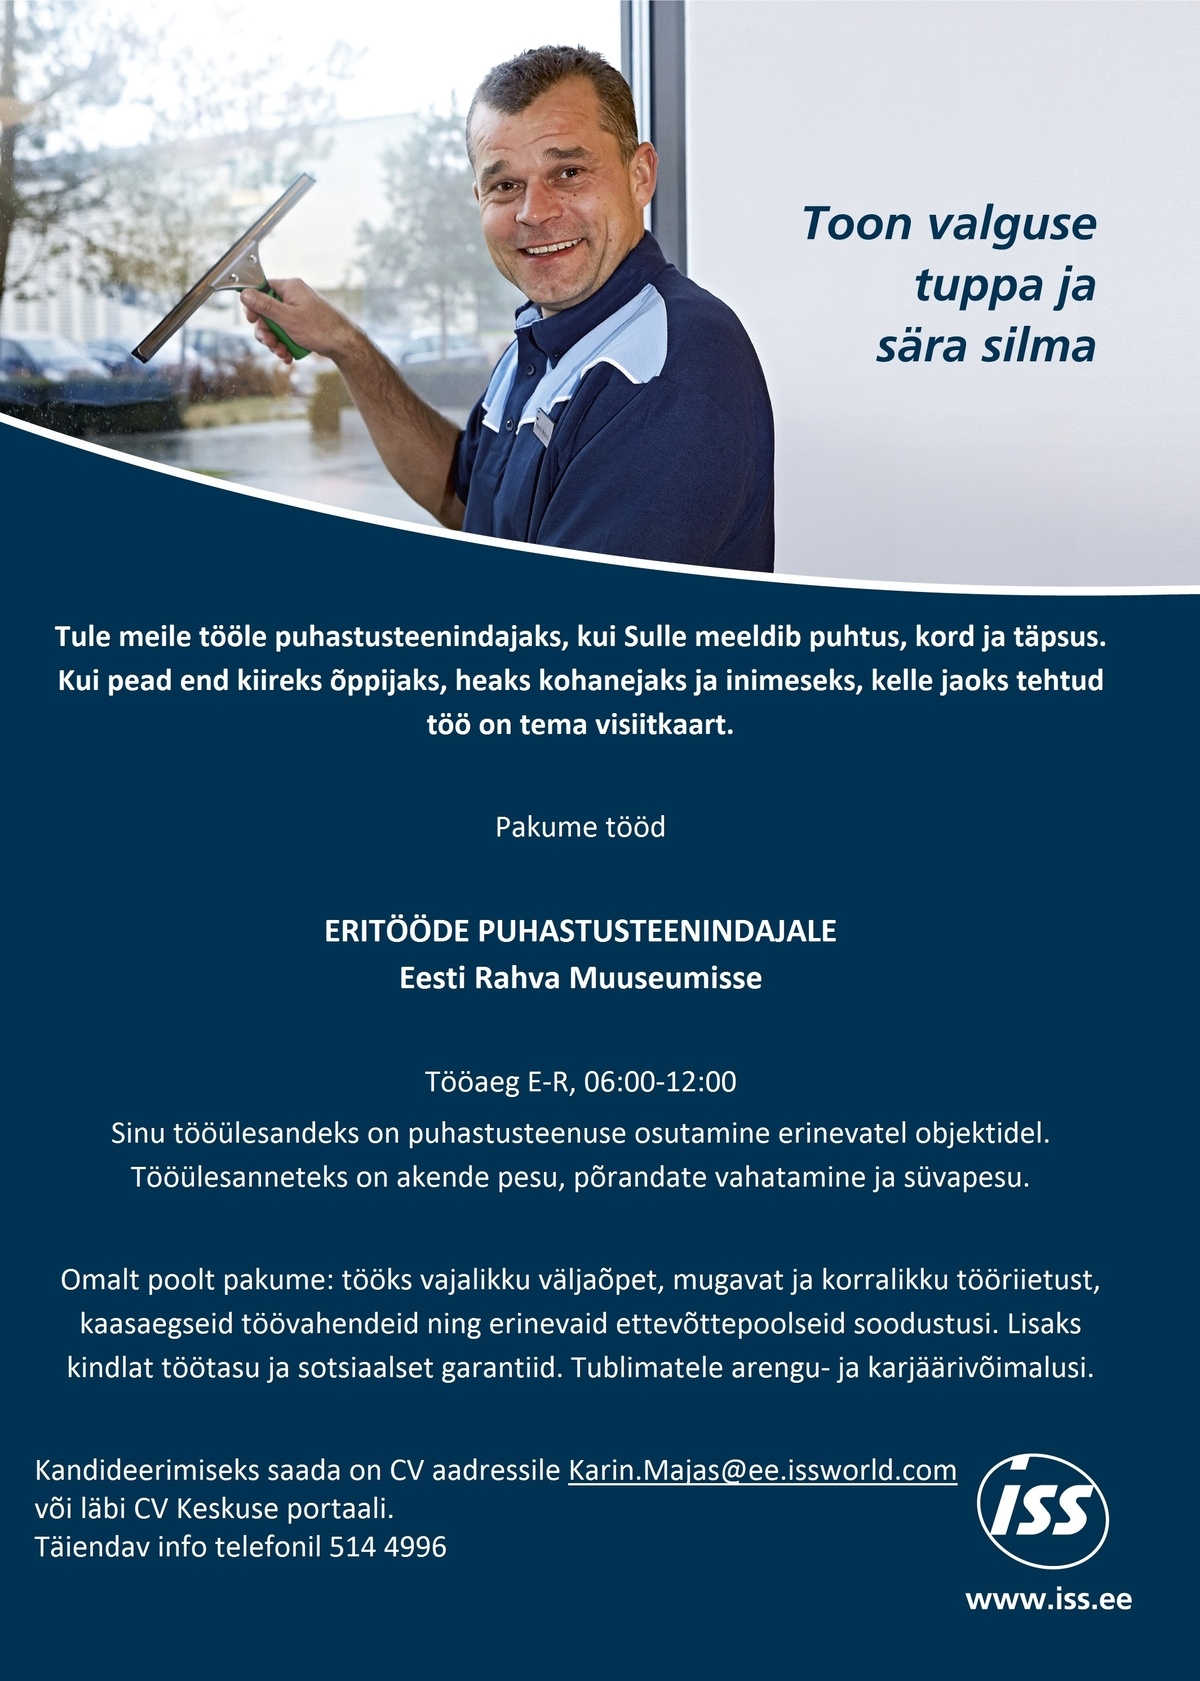 ISS Eesti AS Eritööde puhastusteenindaja Eesti Rahva Muuseumis